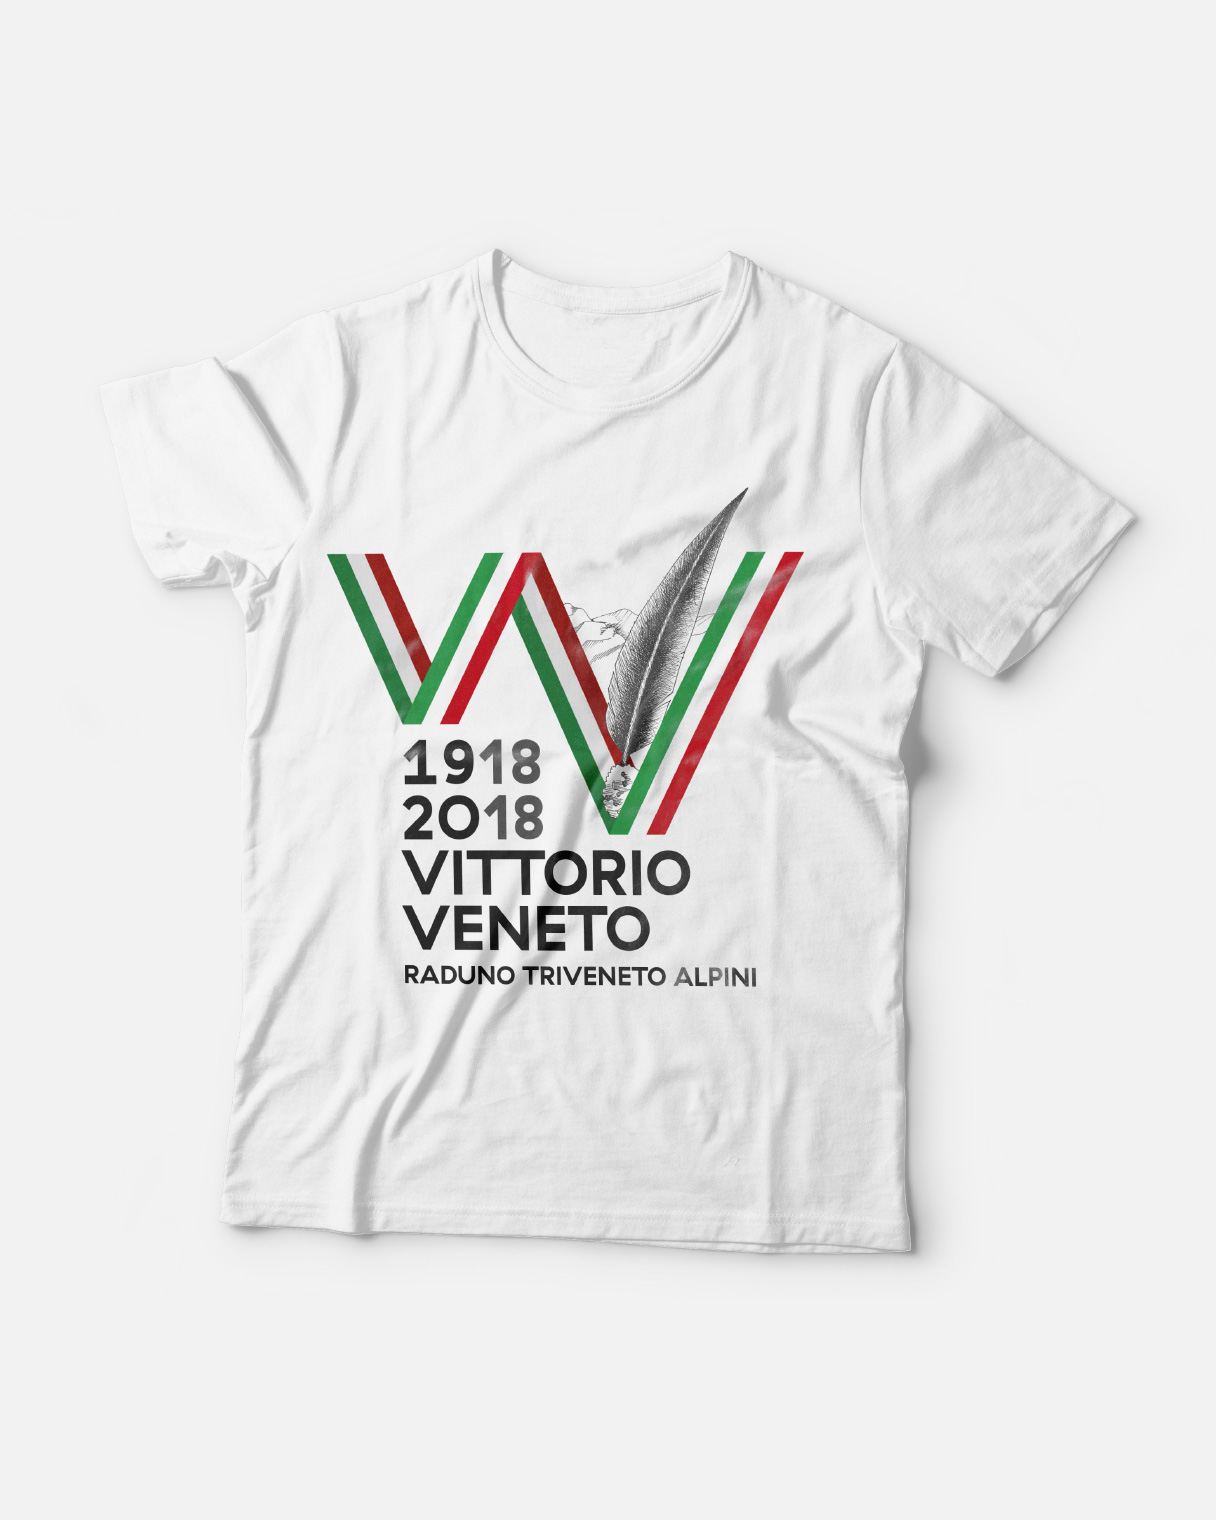 Progettazione grafica t-shirt Raduno Triveneto Alpini | Kora Comunicazione